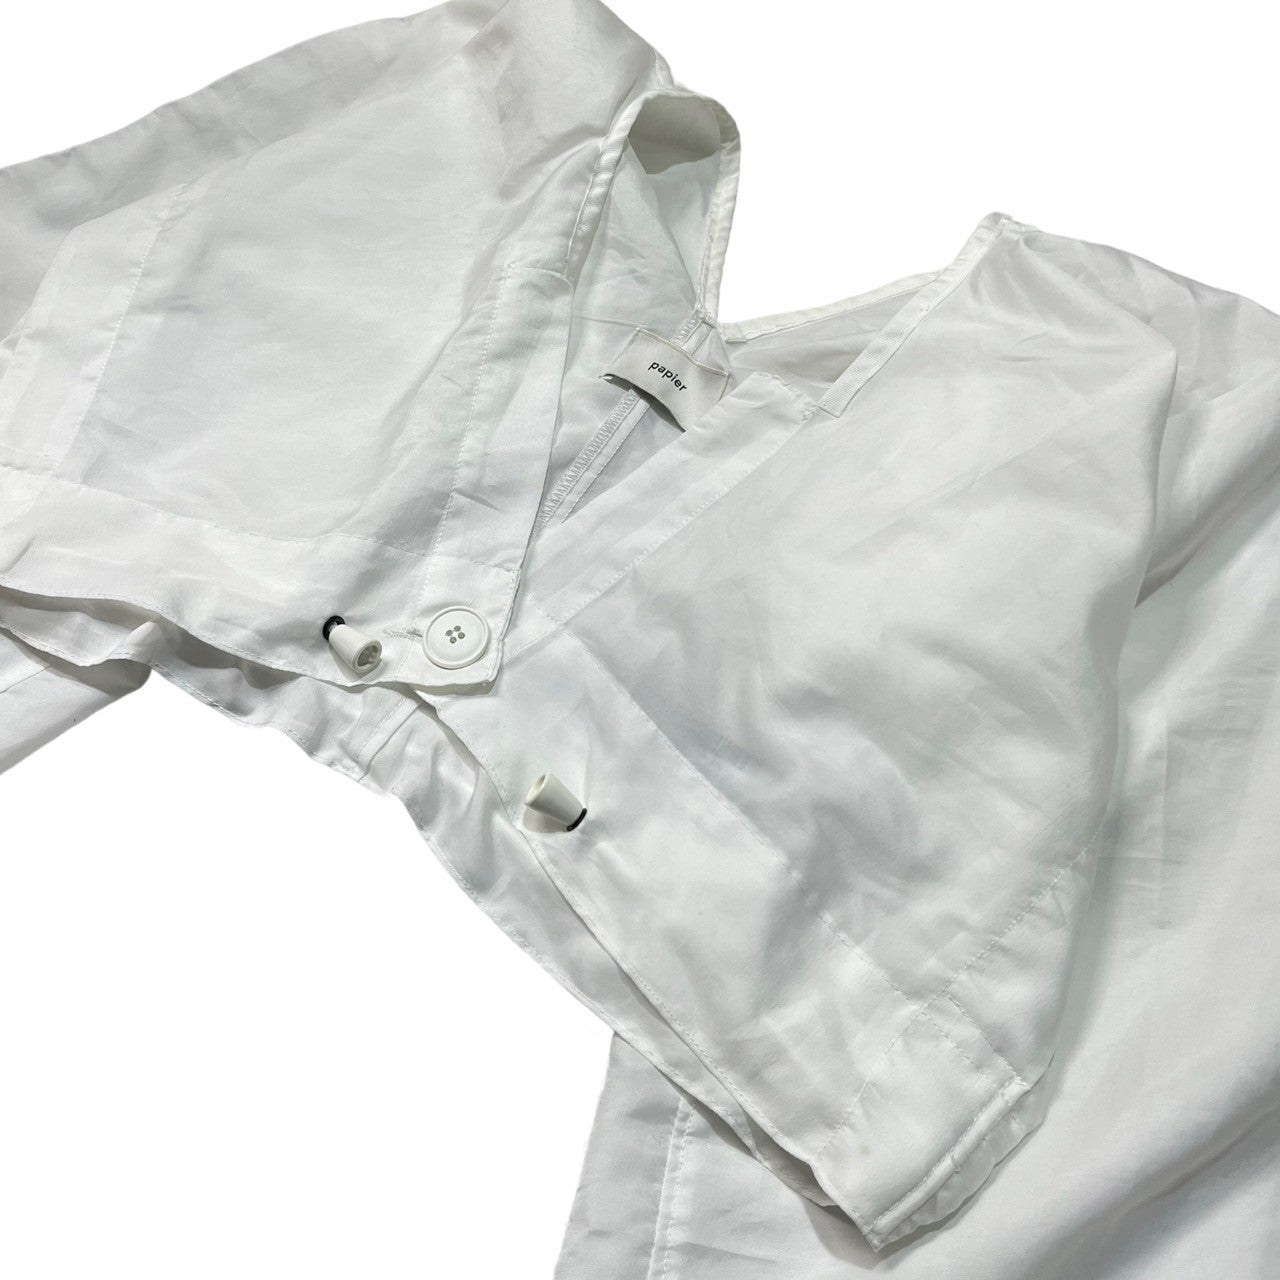 papier(パピエ) reconstructed volume blouse 再構築 ボリューム ブラウス ショート丈 SIZE FREE ホワイト